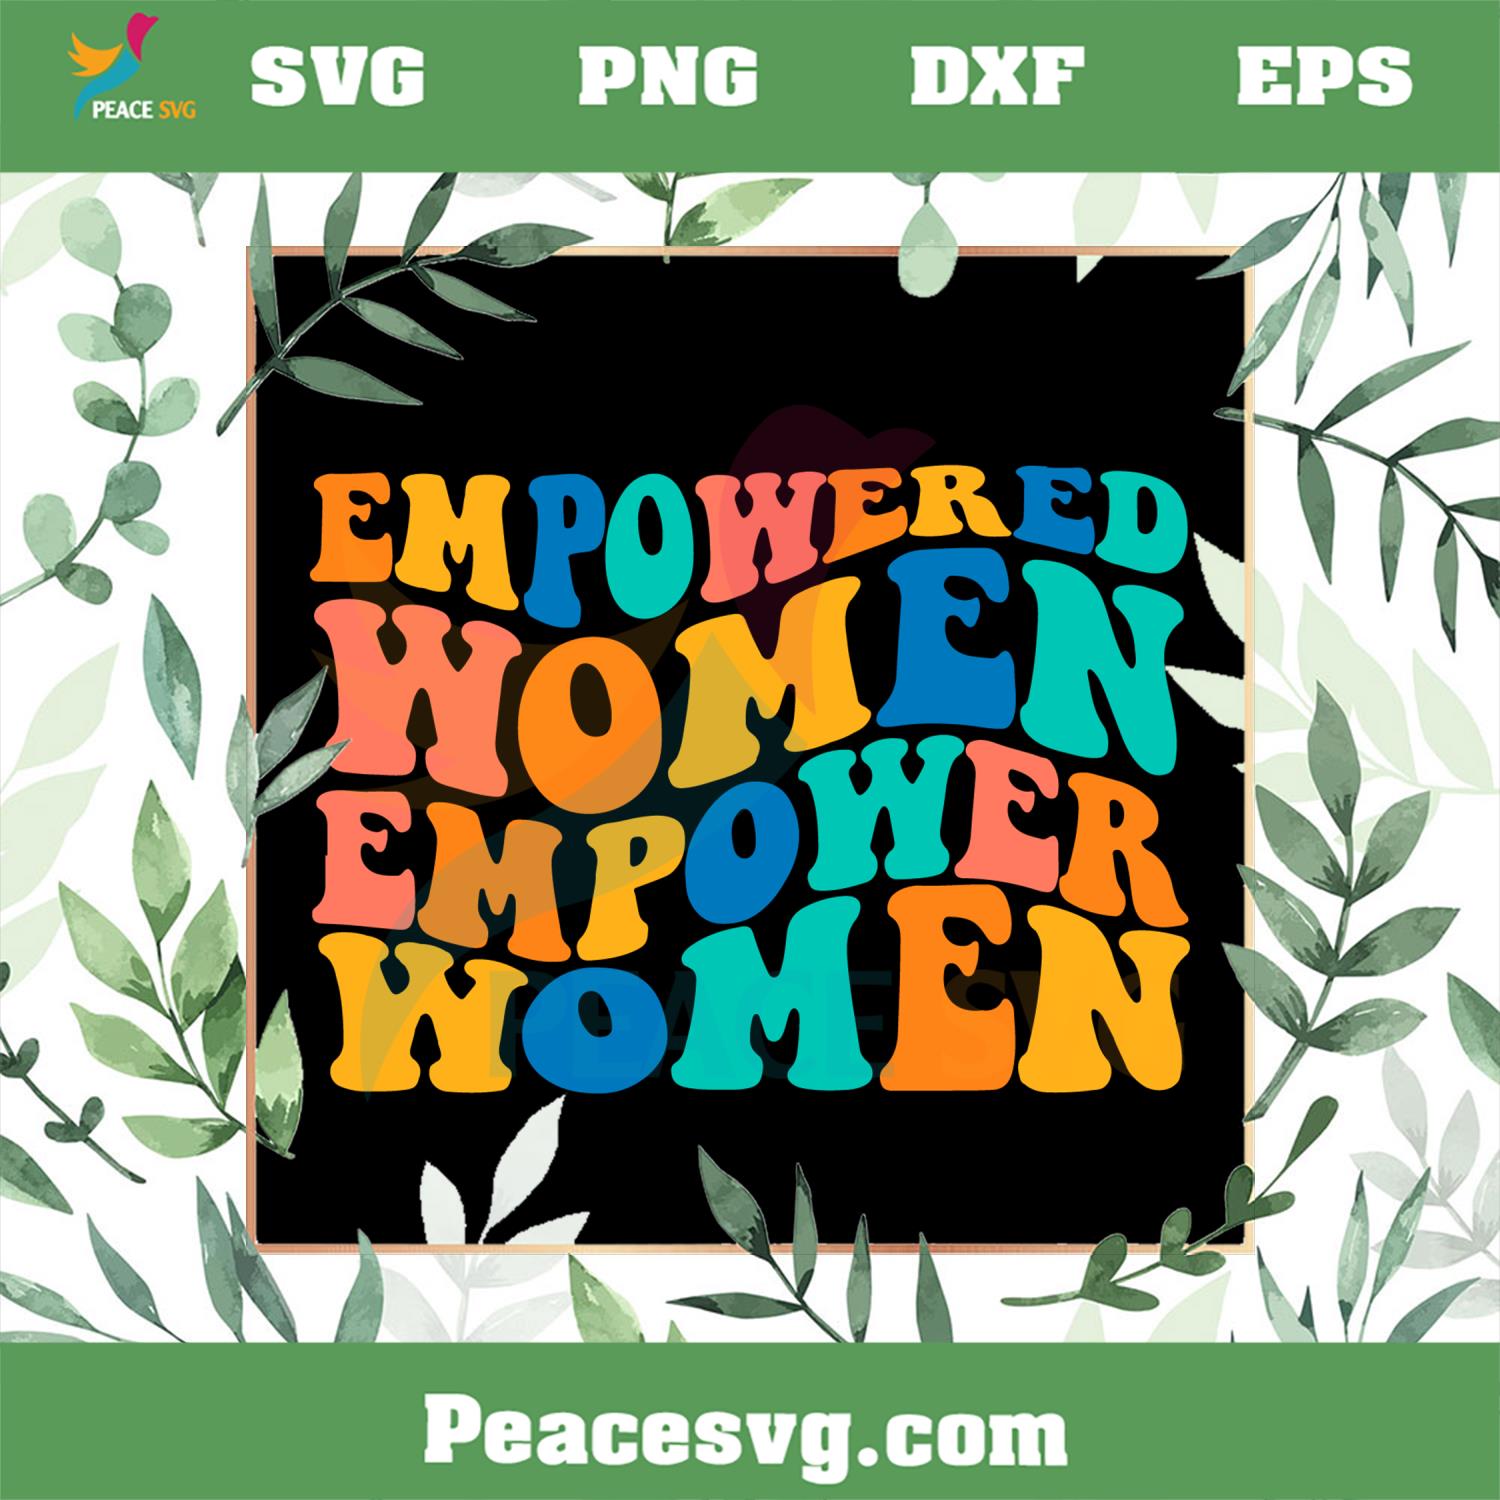 Empowered Women Empower Women SVG, Happy Mother’s Day Svg